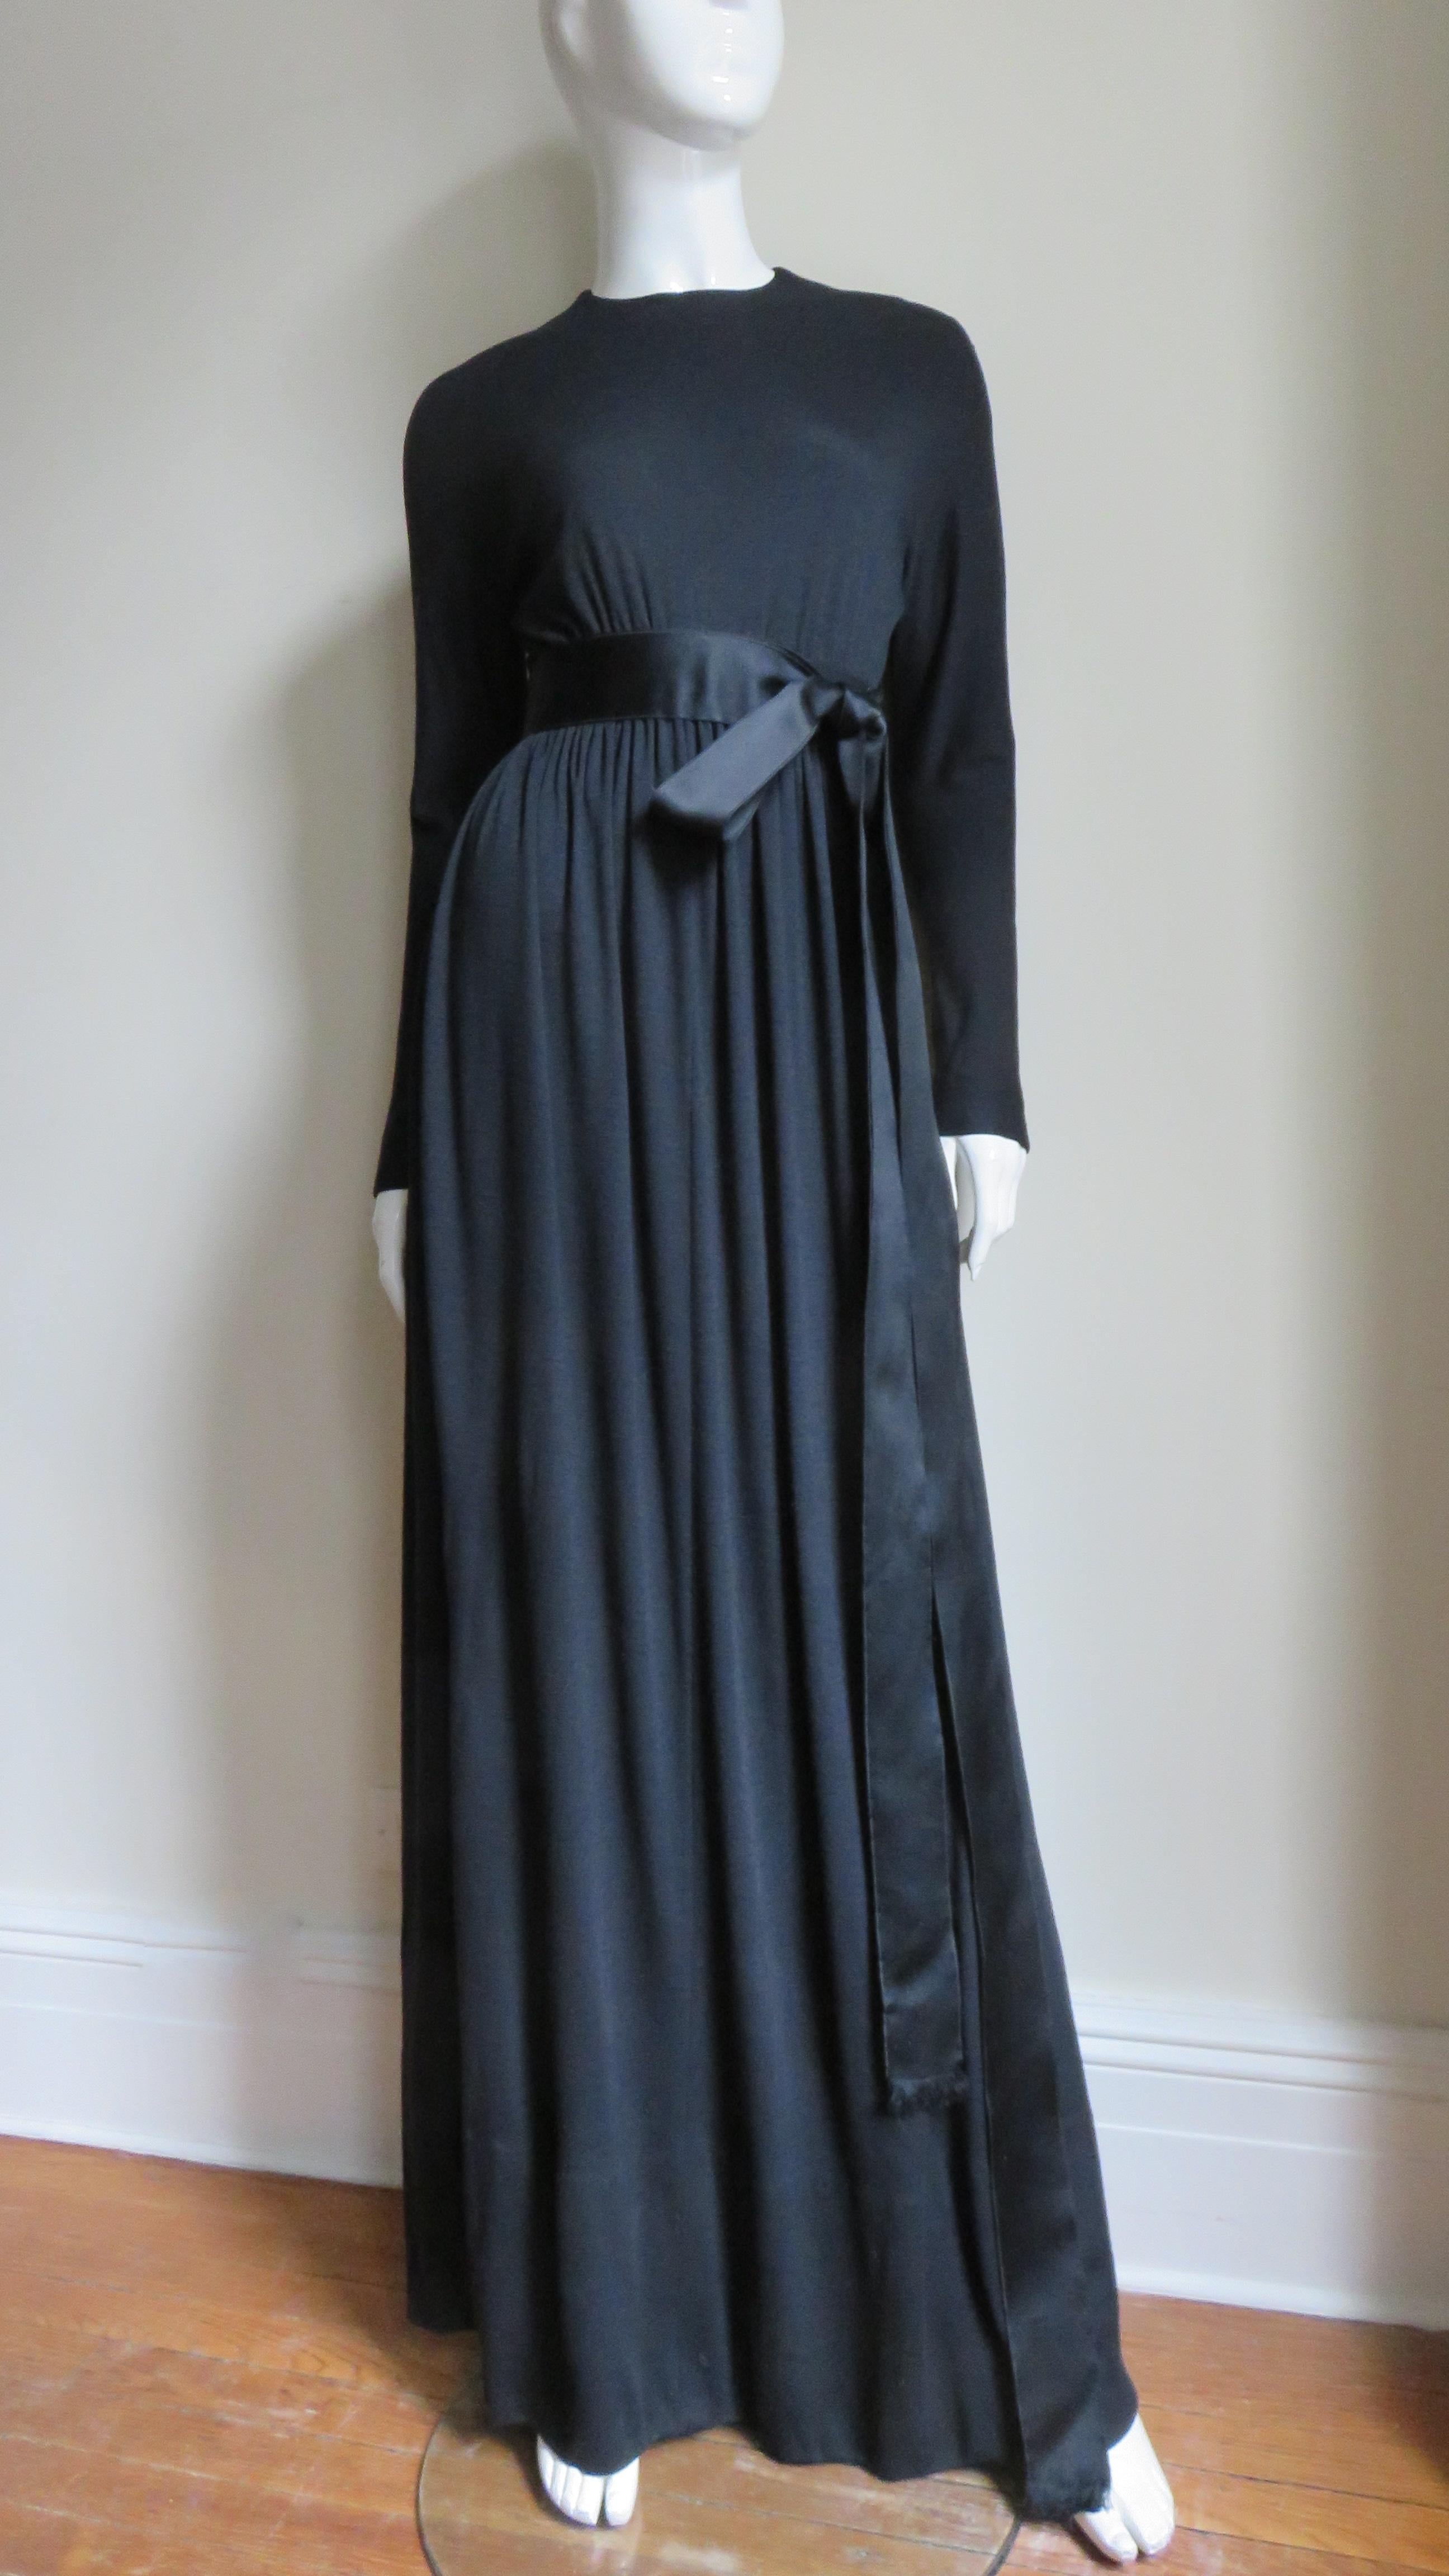 Une magnifique robe maxi en jersey de laine noire du maître designer Norman Norell.  Elle a une encolure ras du cou, des manches dolman avec des poignets à fermeture éclair et une ceinture en ruban de satin de soie ornant la taille haute sur